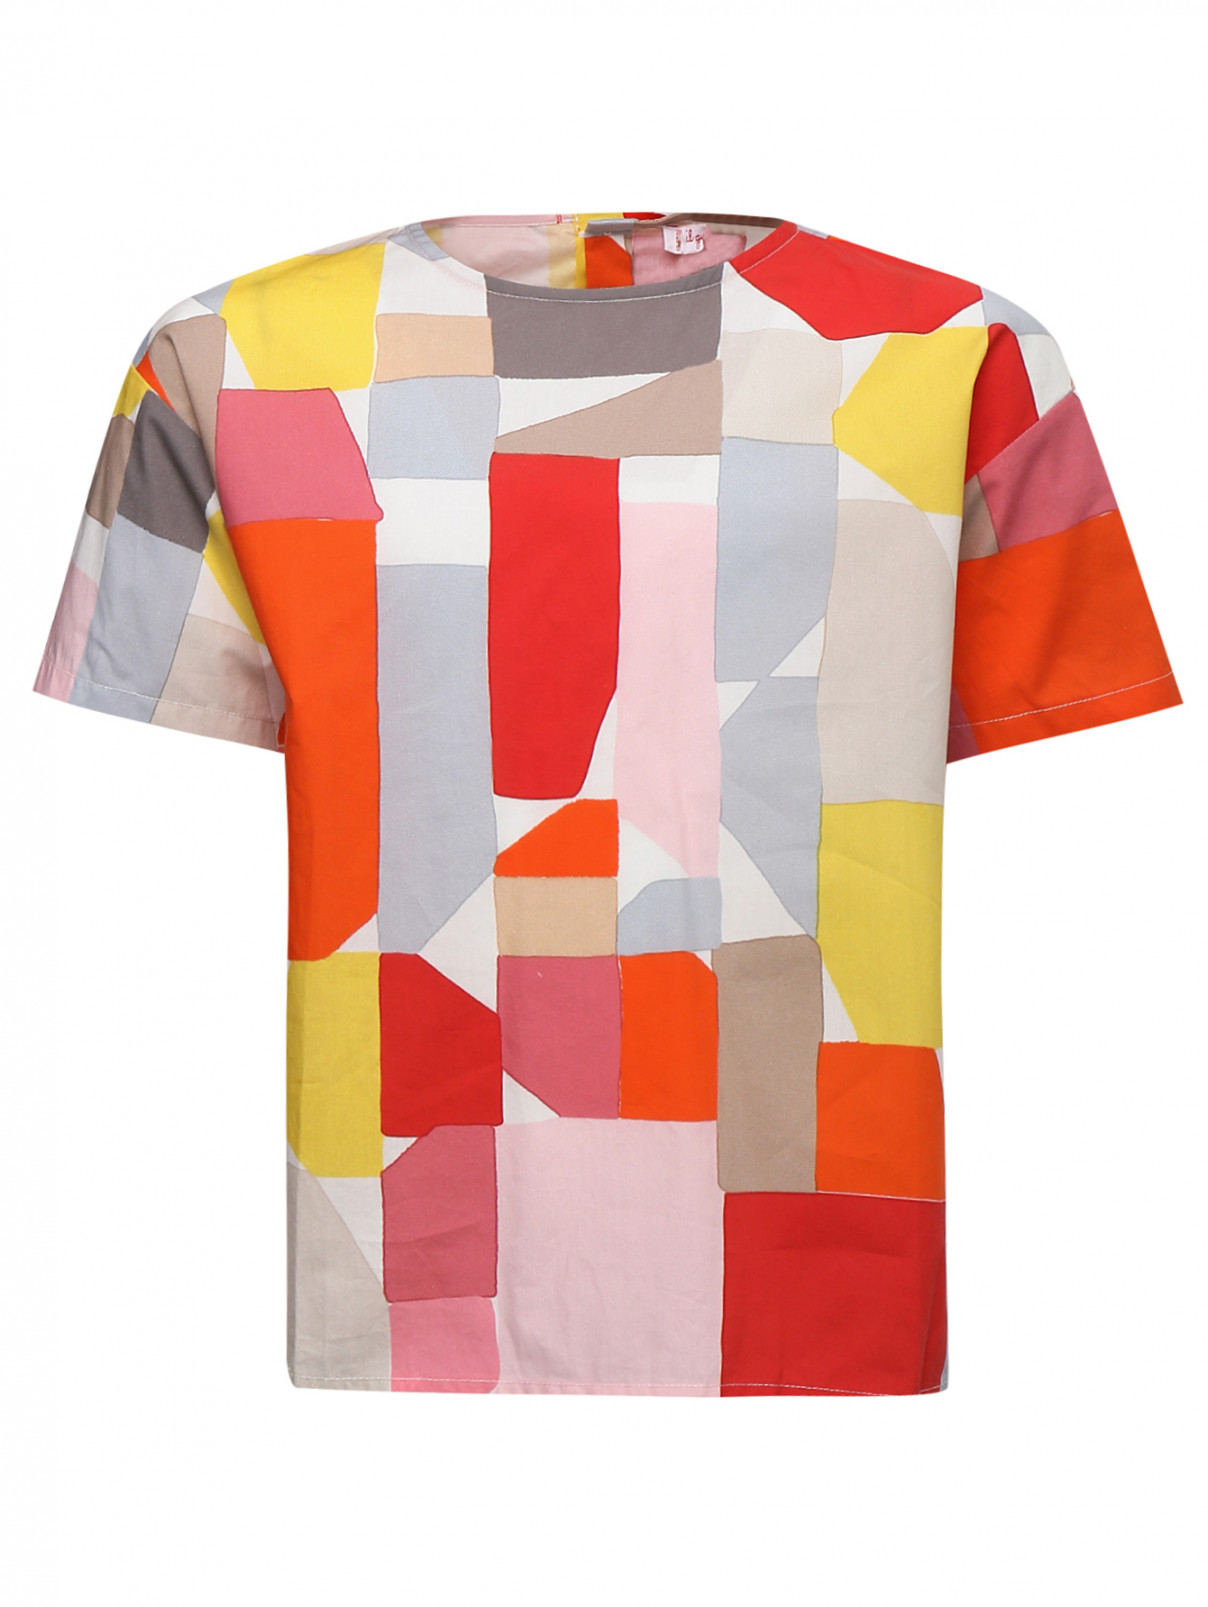 Блузка с принтом из хлопка Il Gufo  –  Общий вид  – Цвет:  Серый